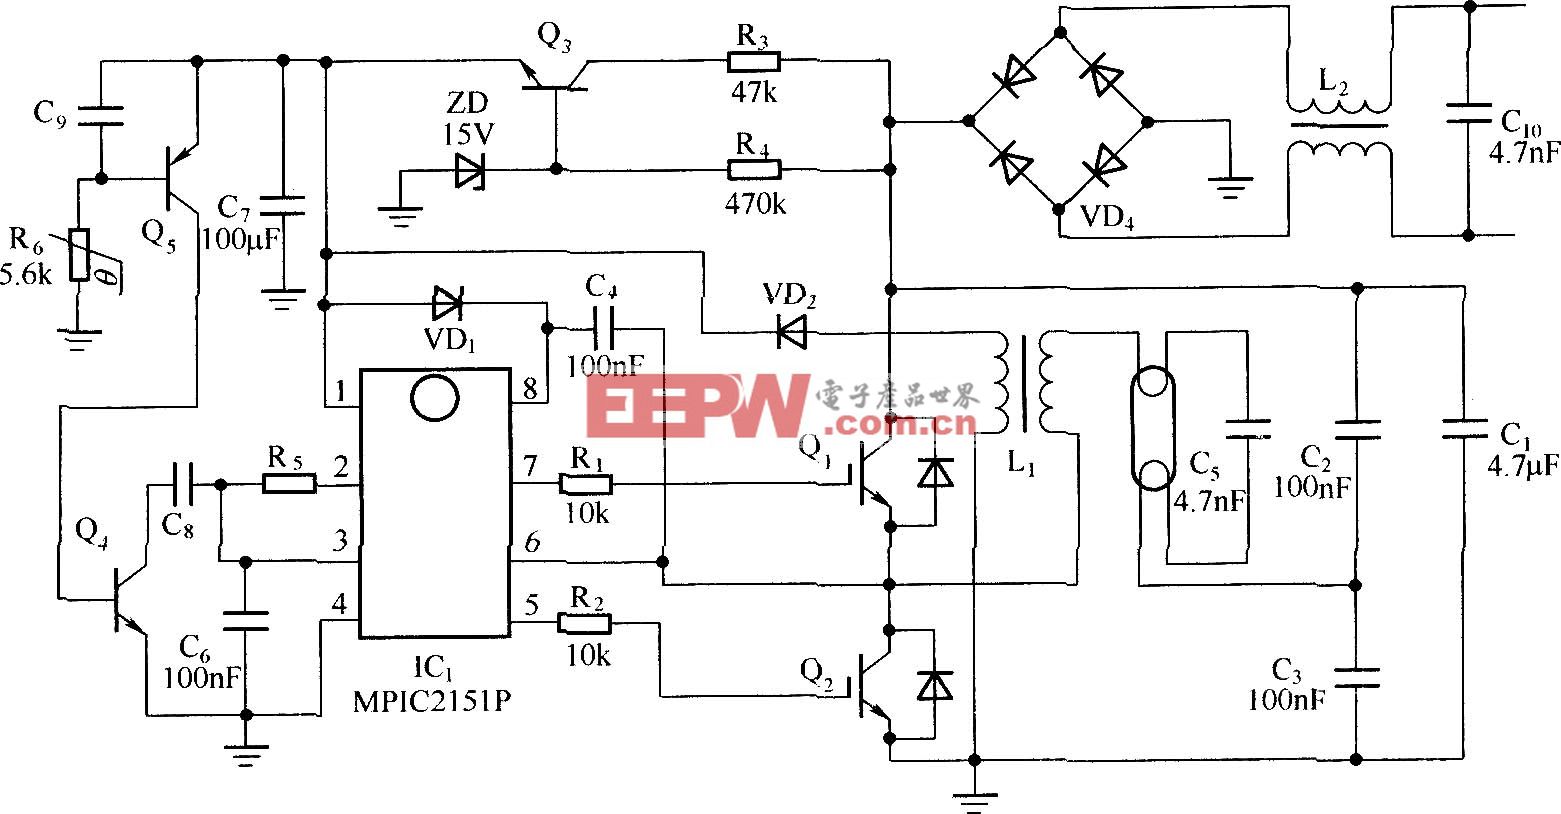 以MPIC2151P和PowerLuxTM IGBT构成的CFL电子镇流器电路